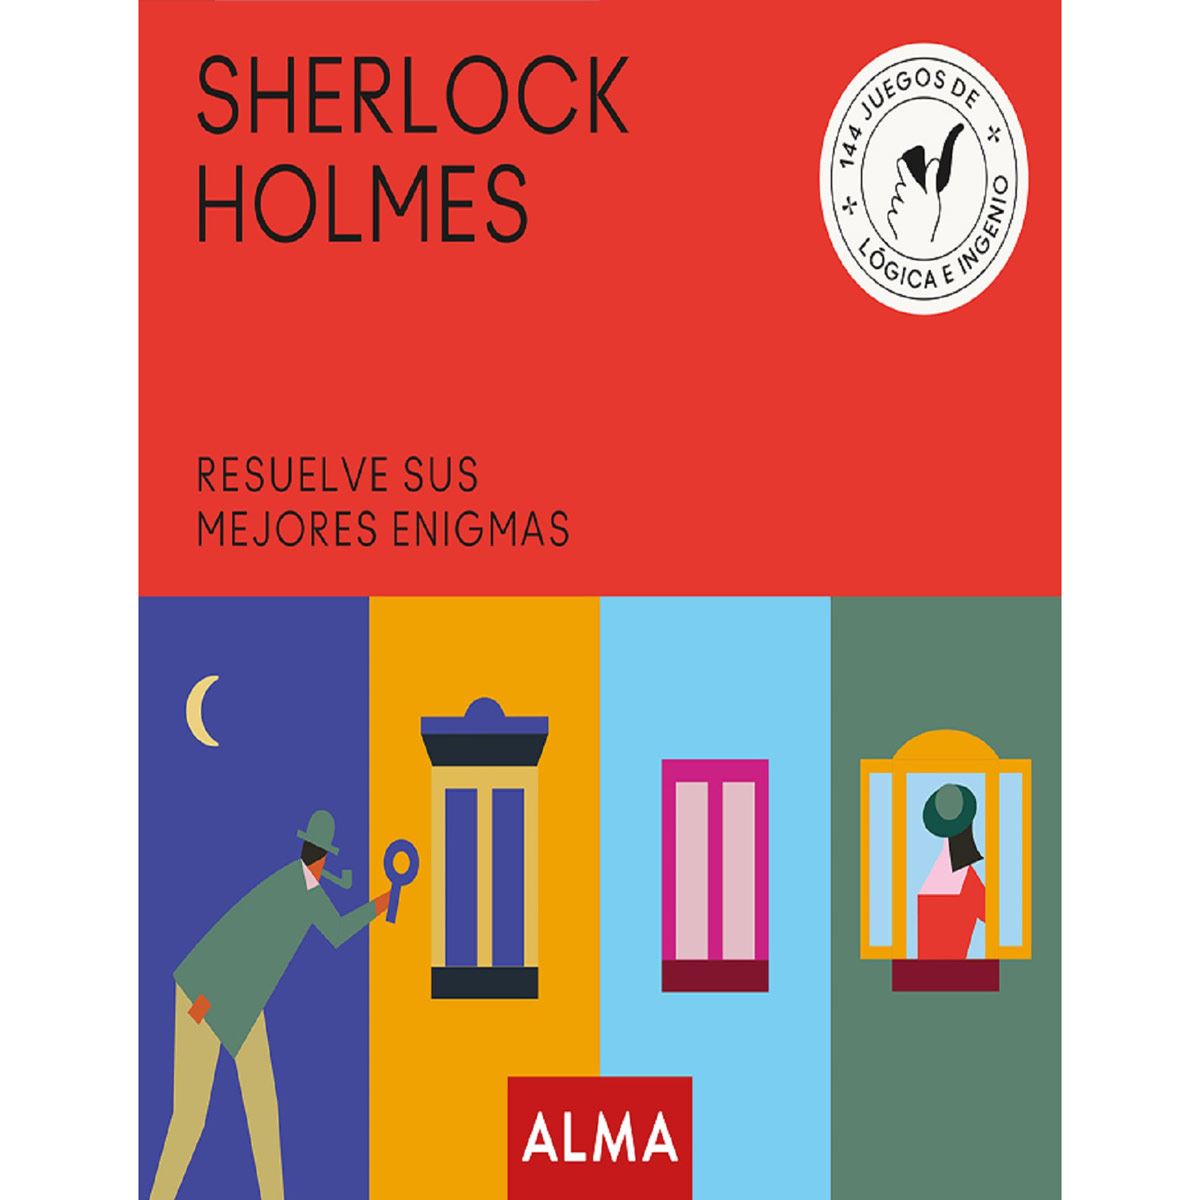 Sherlock Holmes, resuelve sus mejores enigmas